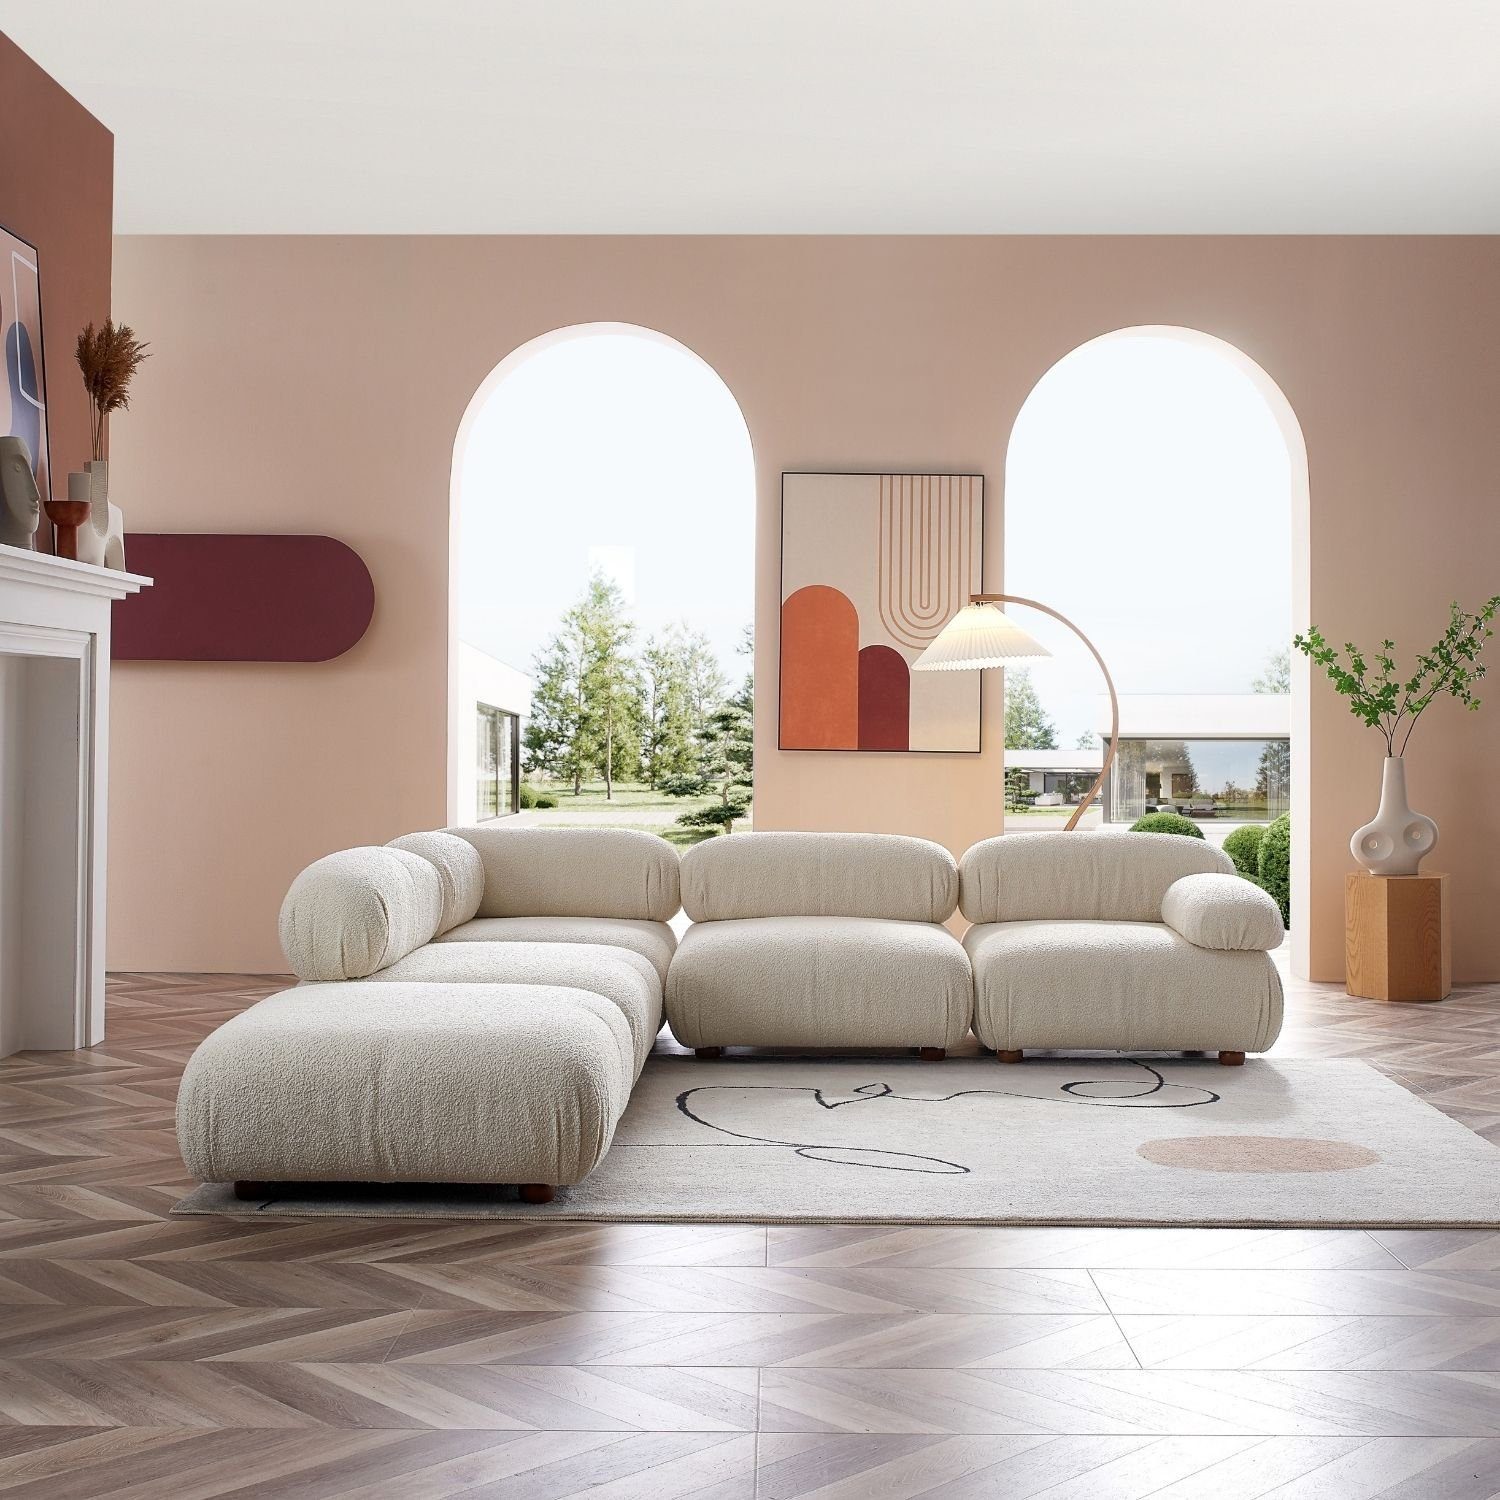 Aufbau aus enthalten! Komfortschaum im neueste Touch Generation und Sitzmöbel Knuffiges Weiß-Beige-Lieferung Sofa Preis me